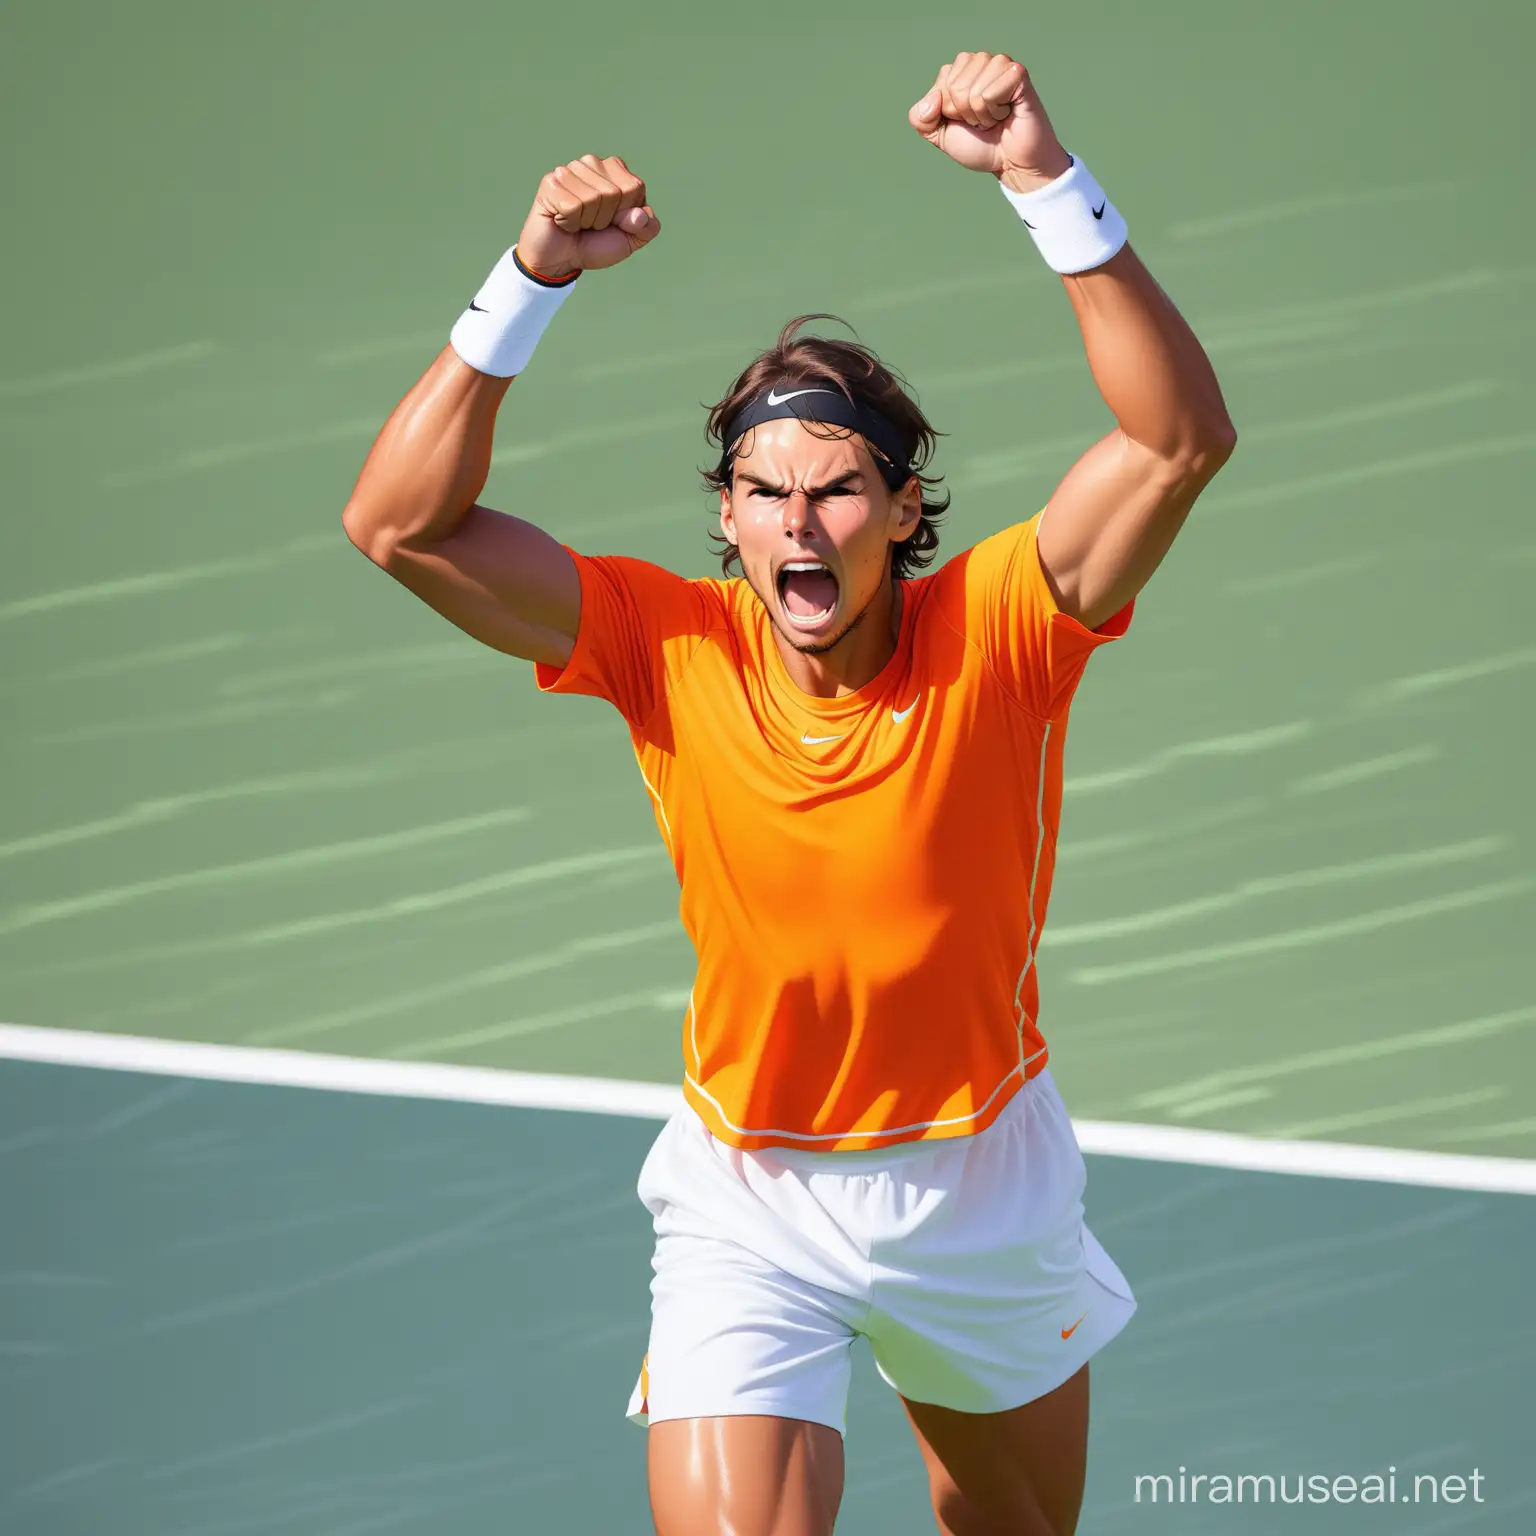 Rafael Nadal qui dresse le poing vers le haut, en signe de victoire, émus aux larmes, sur un terrain de tennis, 